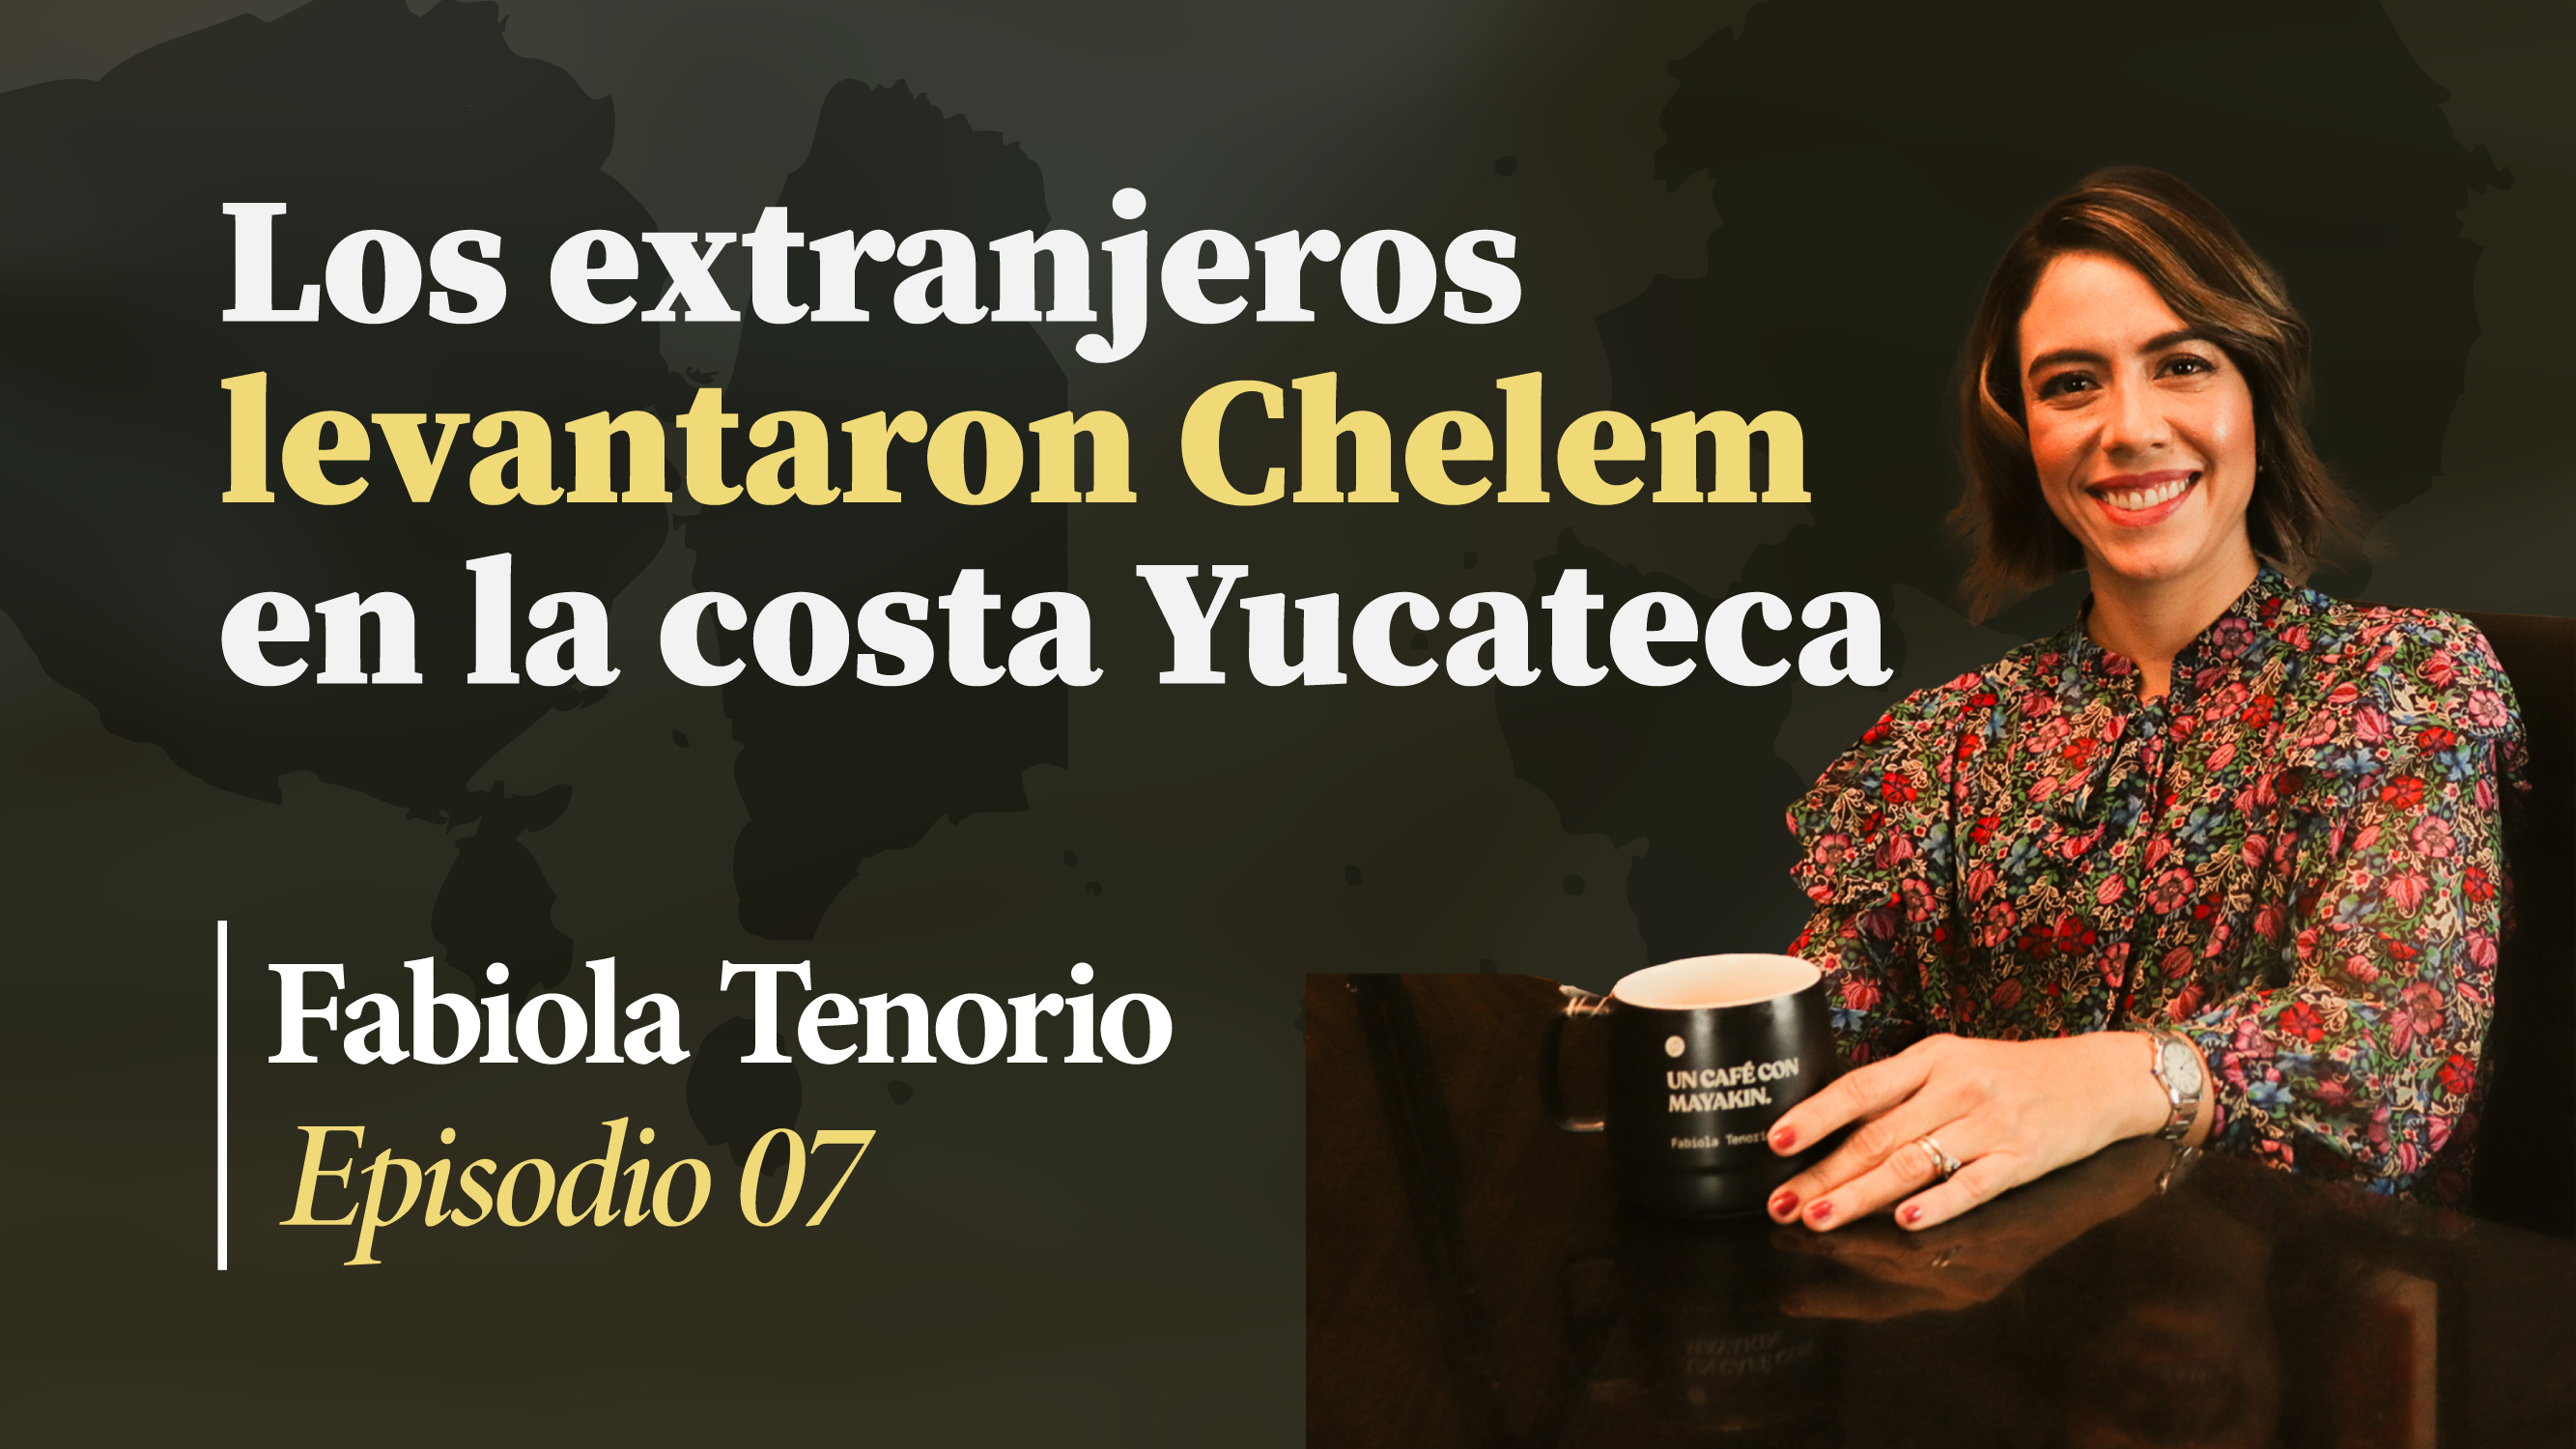 Los extranjeros levantaron la costa yucateca  | Un Café con Mayakin (Ep:07) Fabiola Tenorio